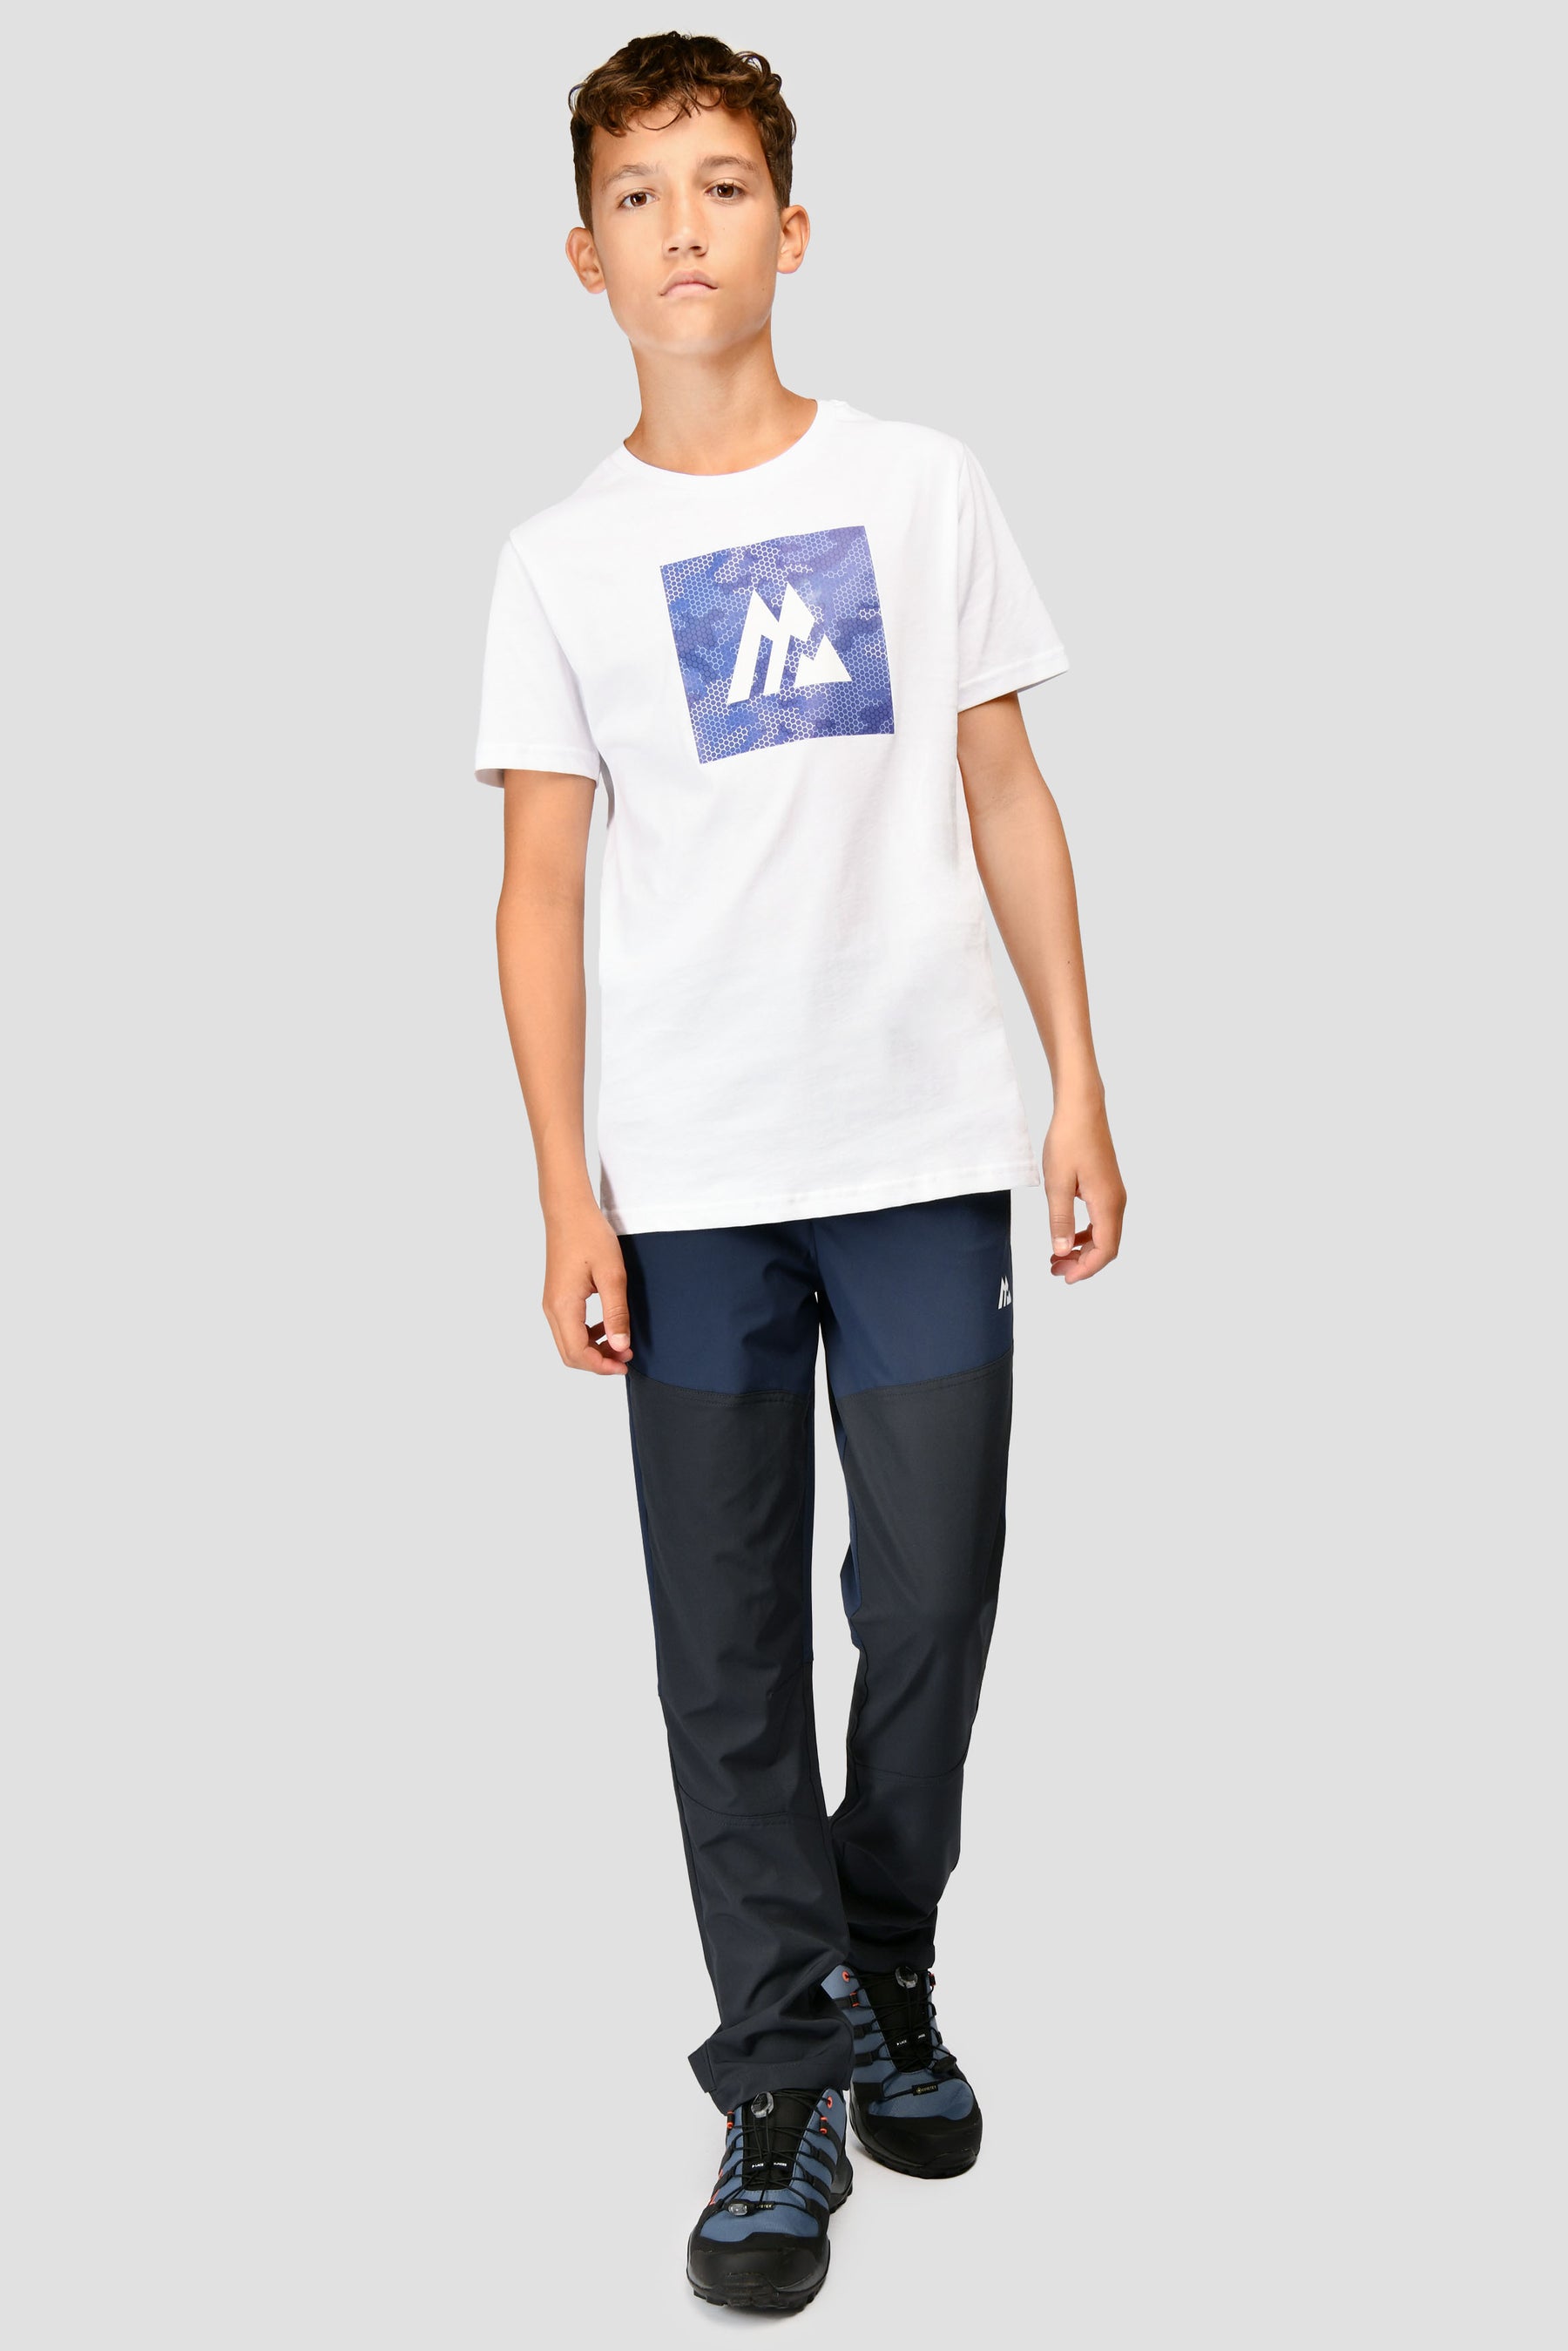 Junior Digi Camo Box T-Shirt - White